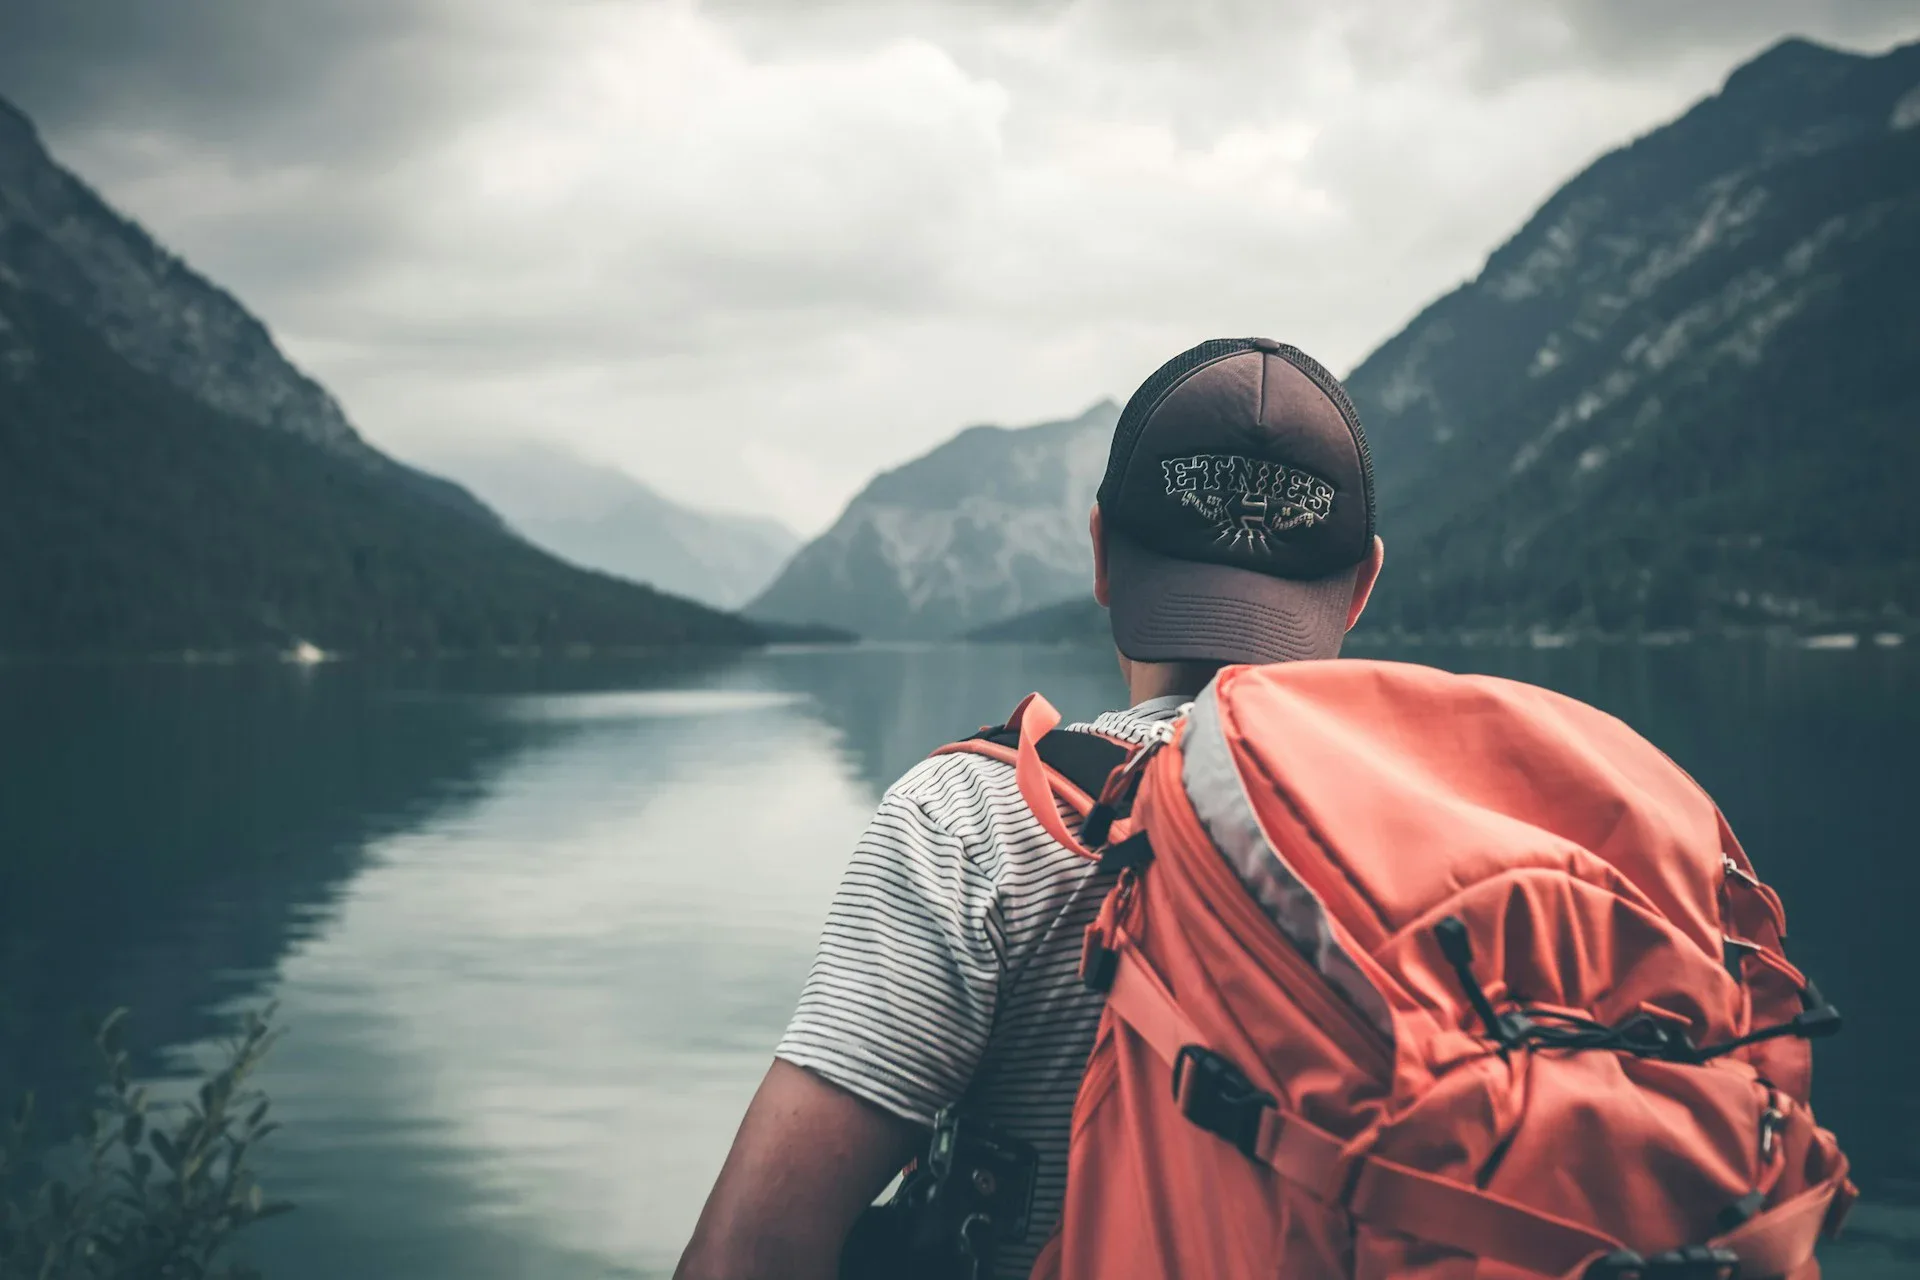 Il ragazzo è in piedi con le spalle alla fotocamera sullo sfondo di un lago e di montagne.